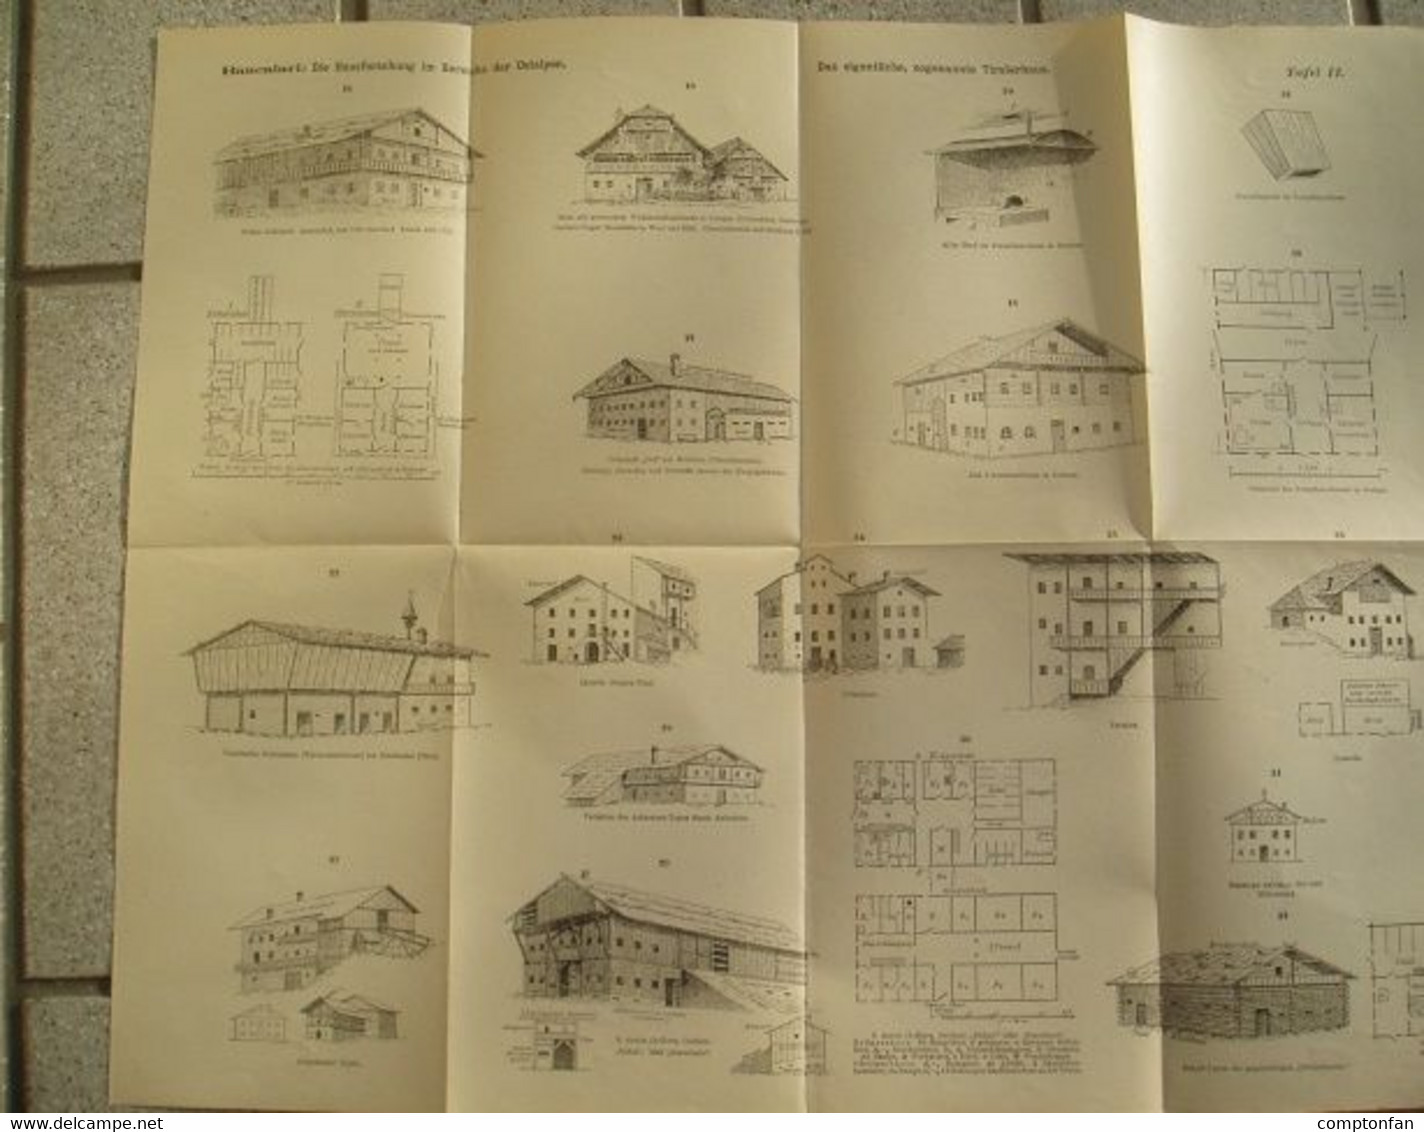 112 Architektur Hausforschung Ostalpen 5 Teile Beilage Zeitschrift 1893 !!!